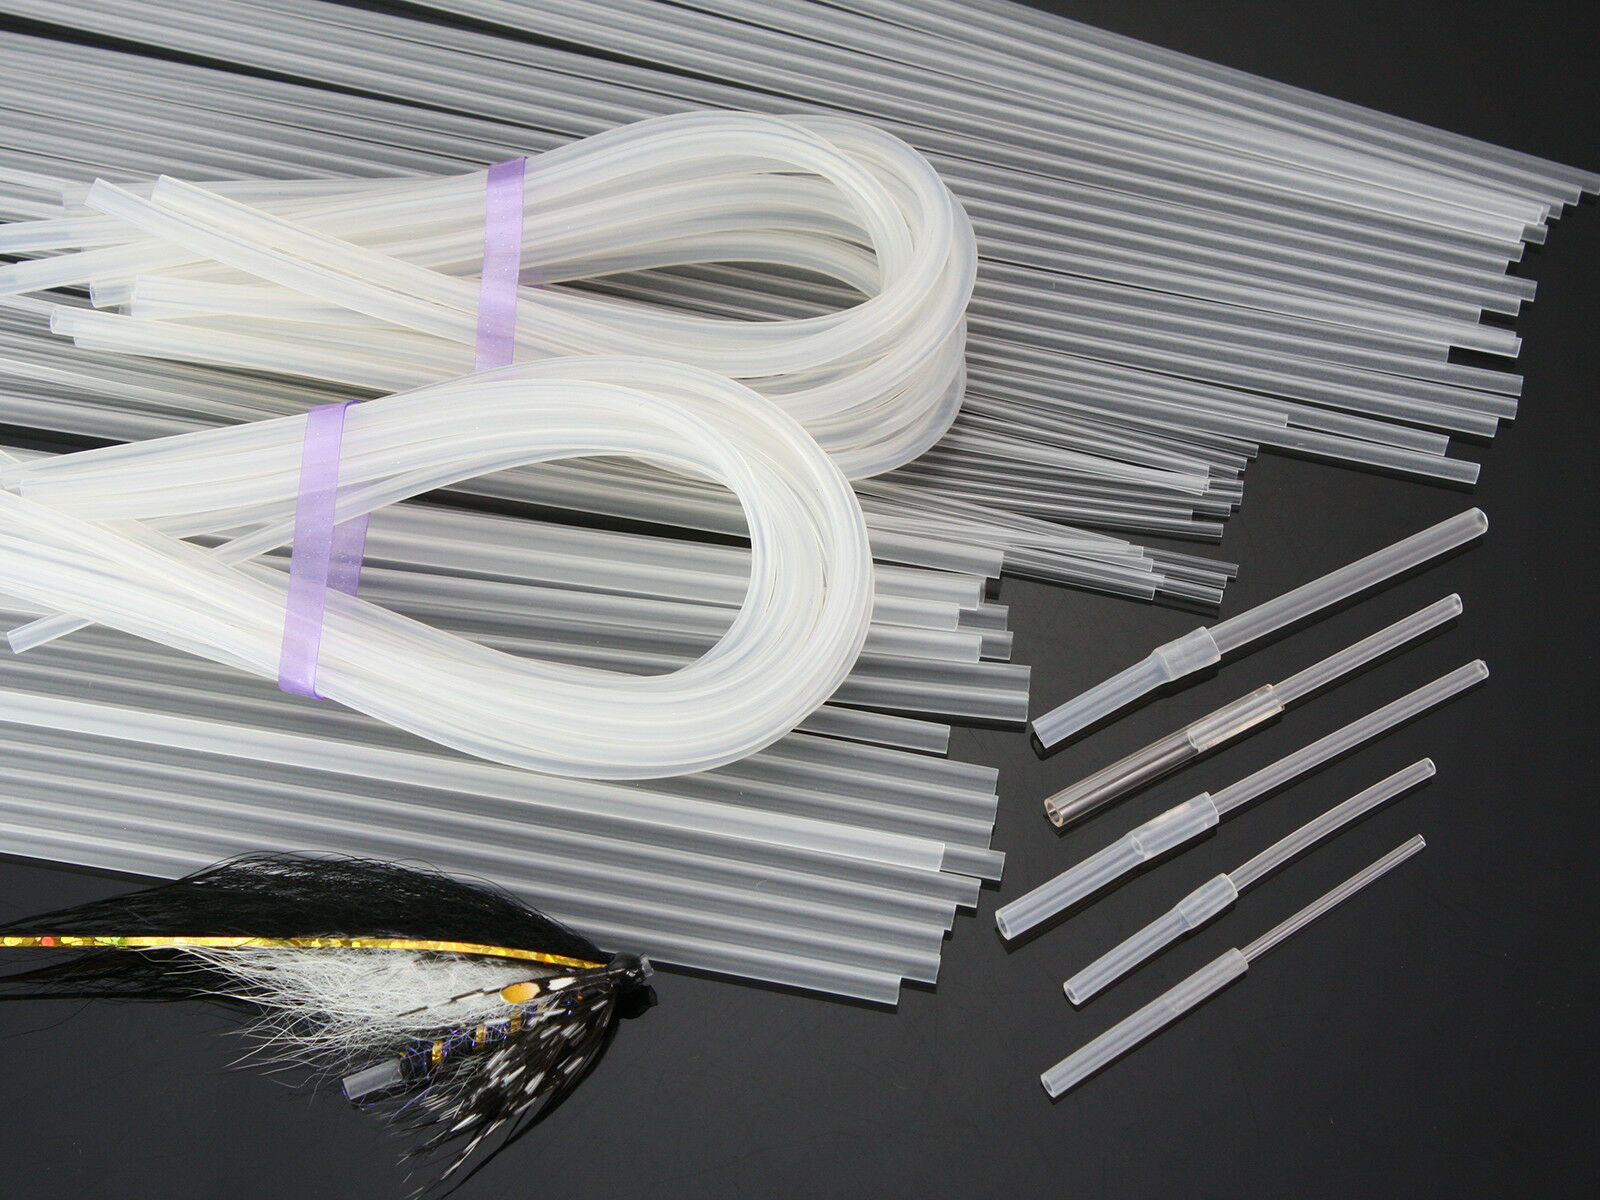 Plastic Tube Kit: Tubefly System Assortment Fly Tying Material,c601